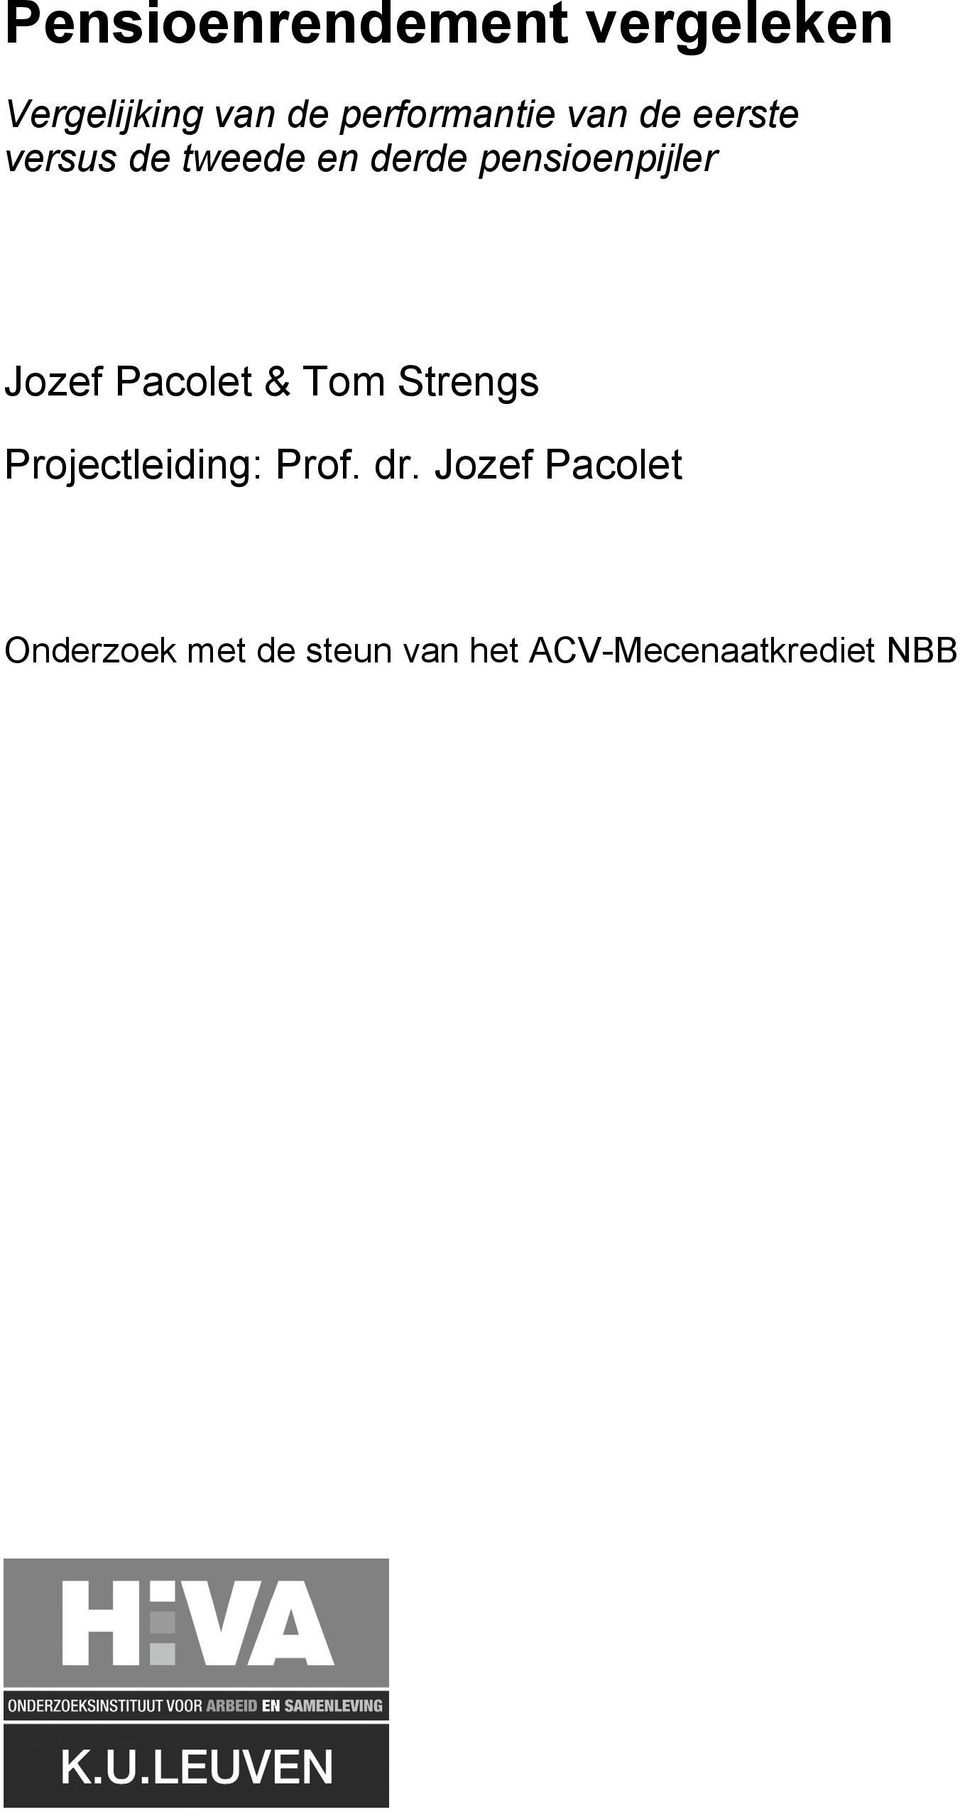 pensioenpijler Jozef Pacolet & Tom Strengs Projectleiding: